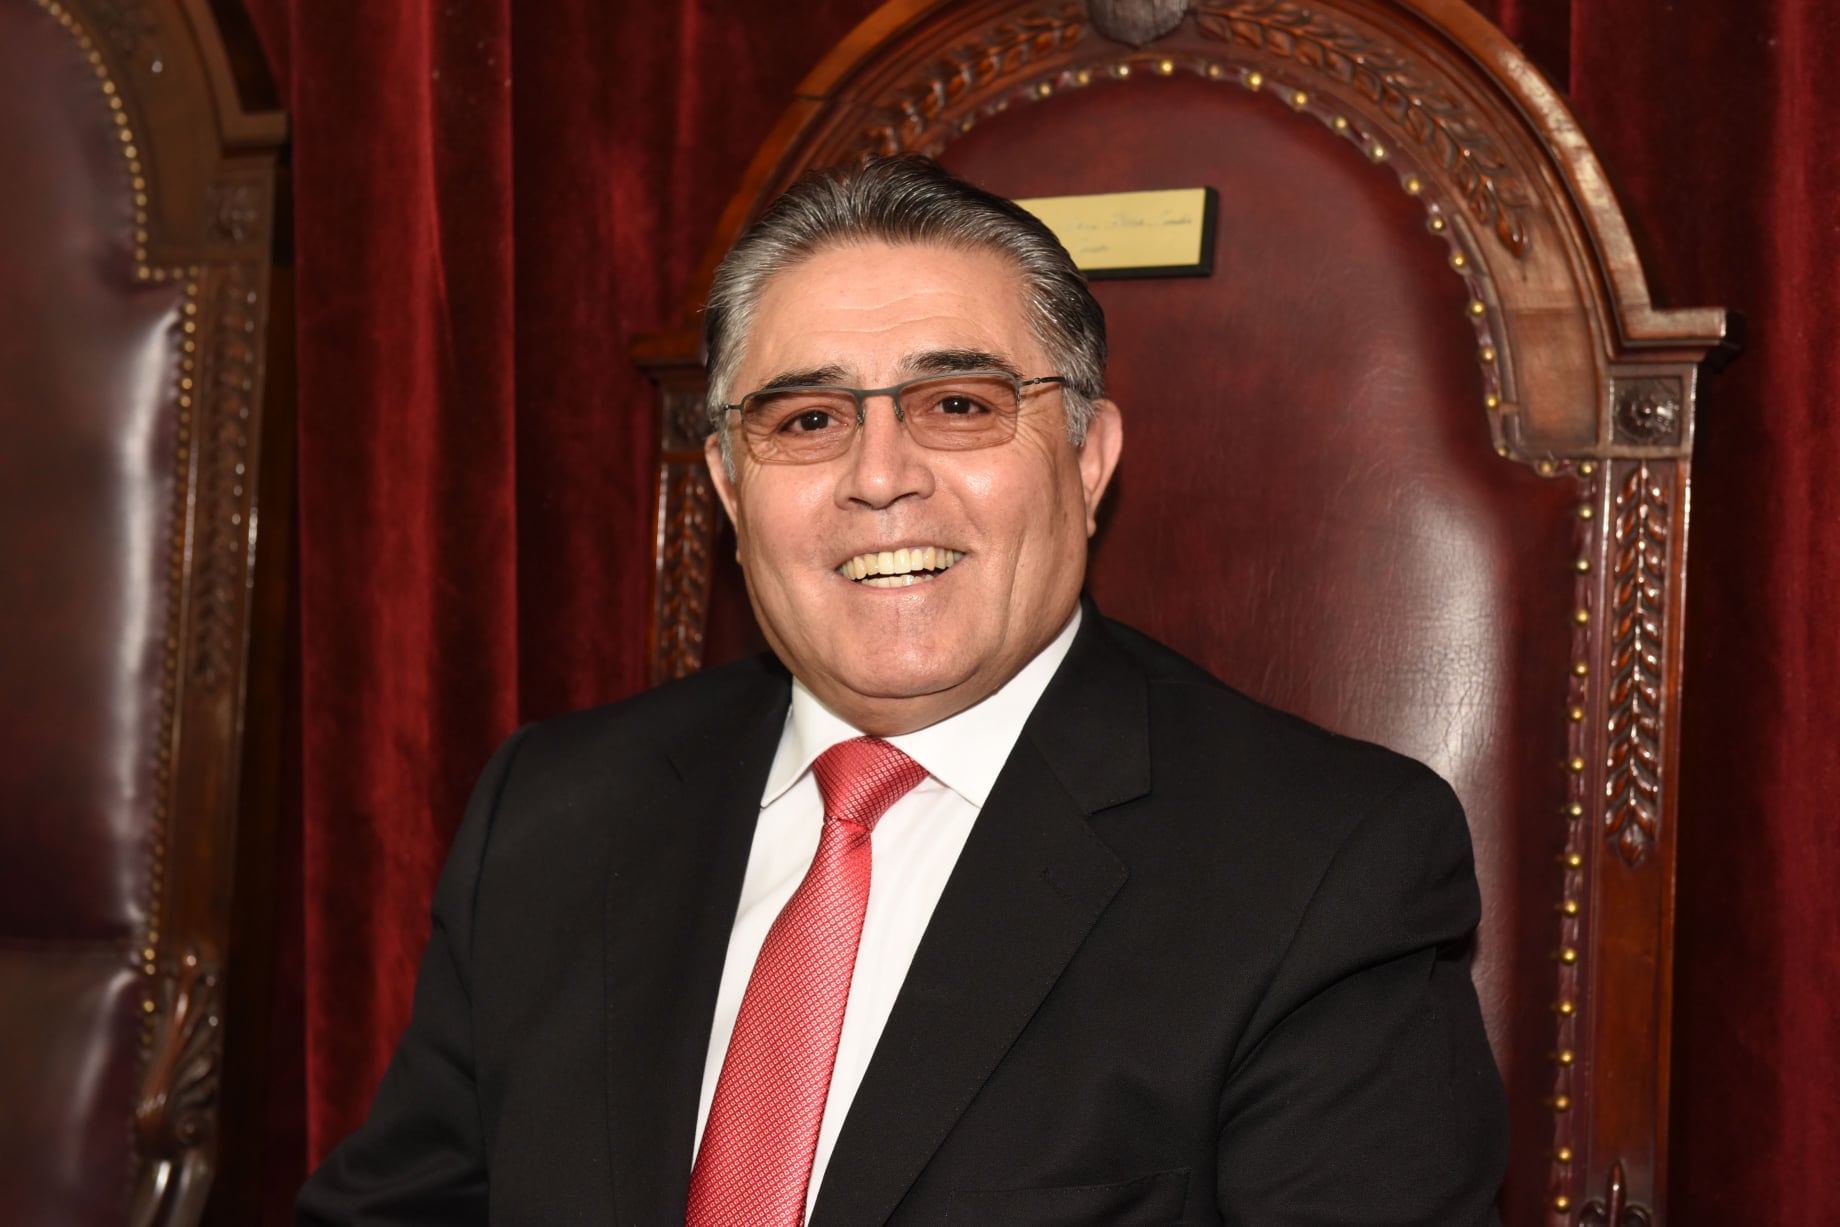 El exministro de la Corte de Apelaciones de Copiapó, Juan Antonio Poblete